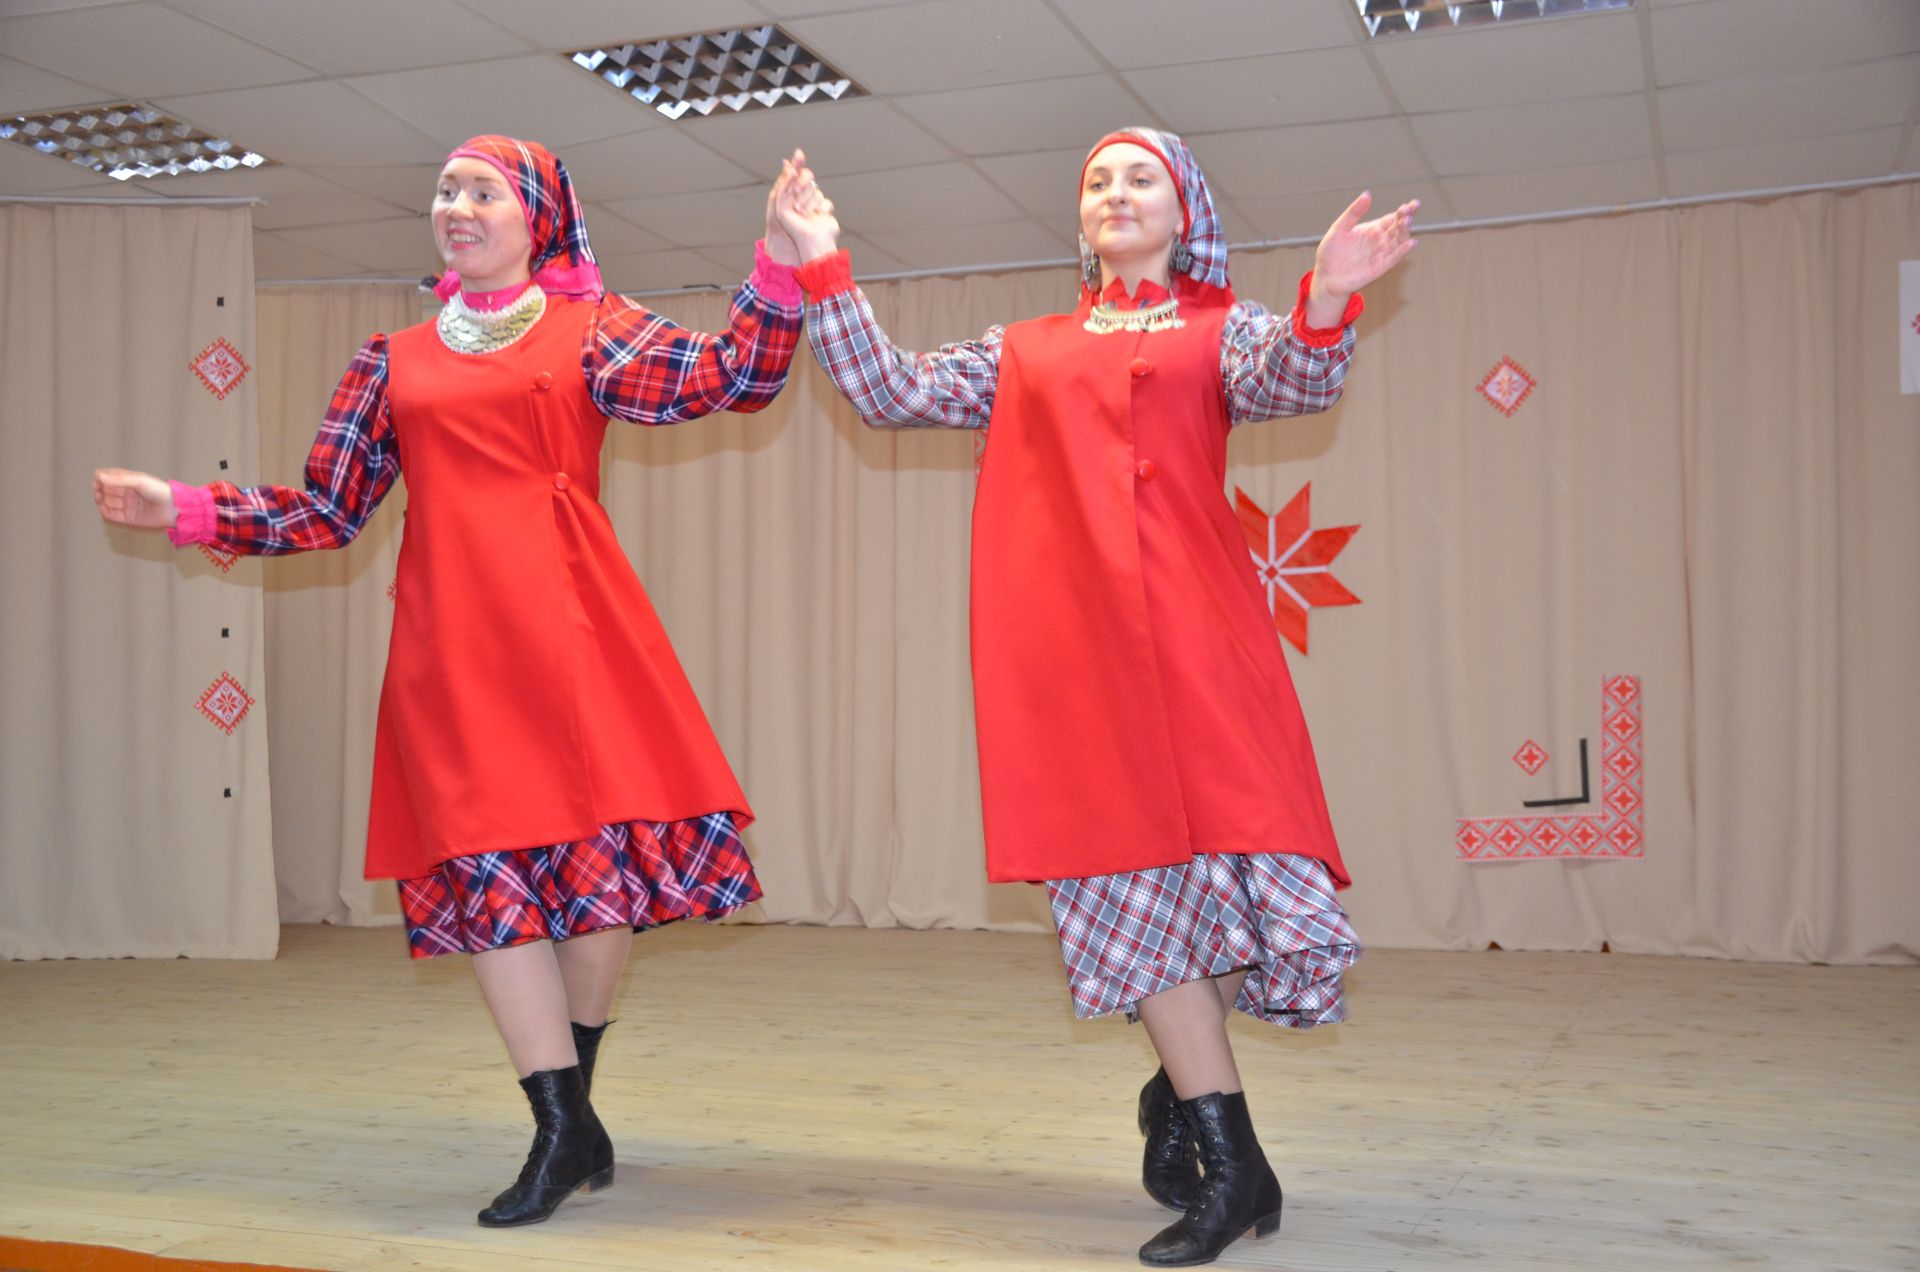 В Сарсак-Омгинском лицее прошел Vl Межрегиональный этнокультурный форум